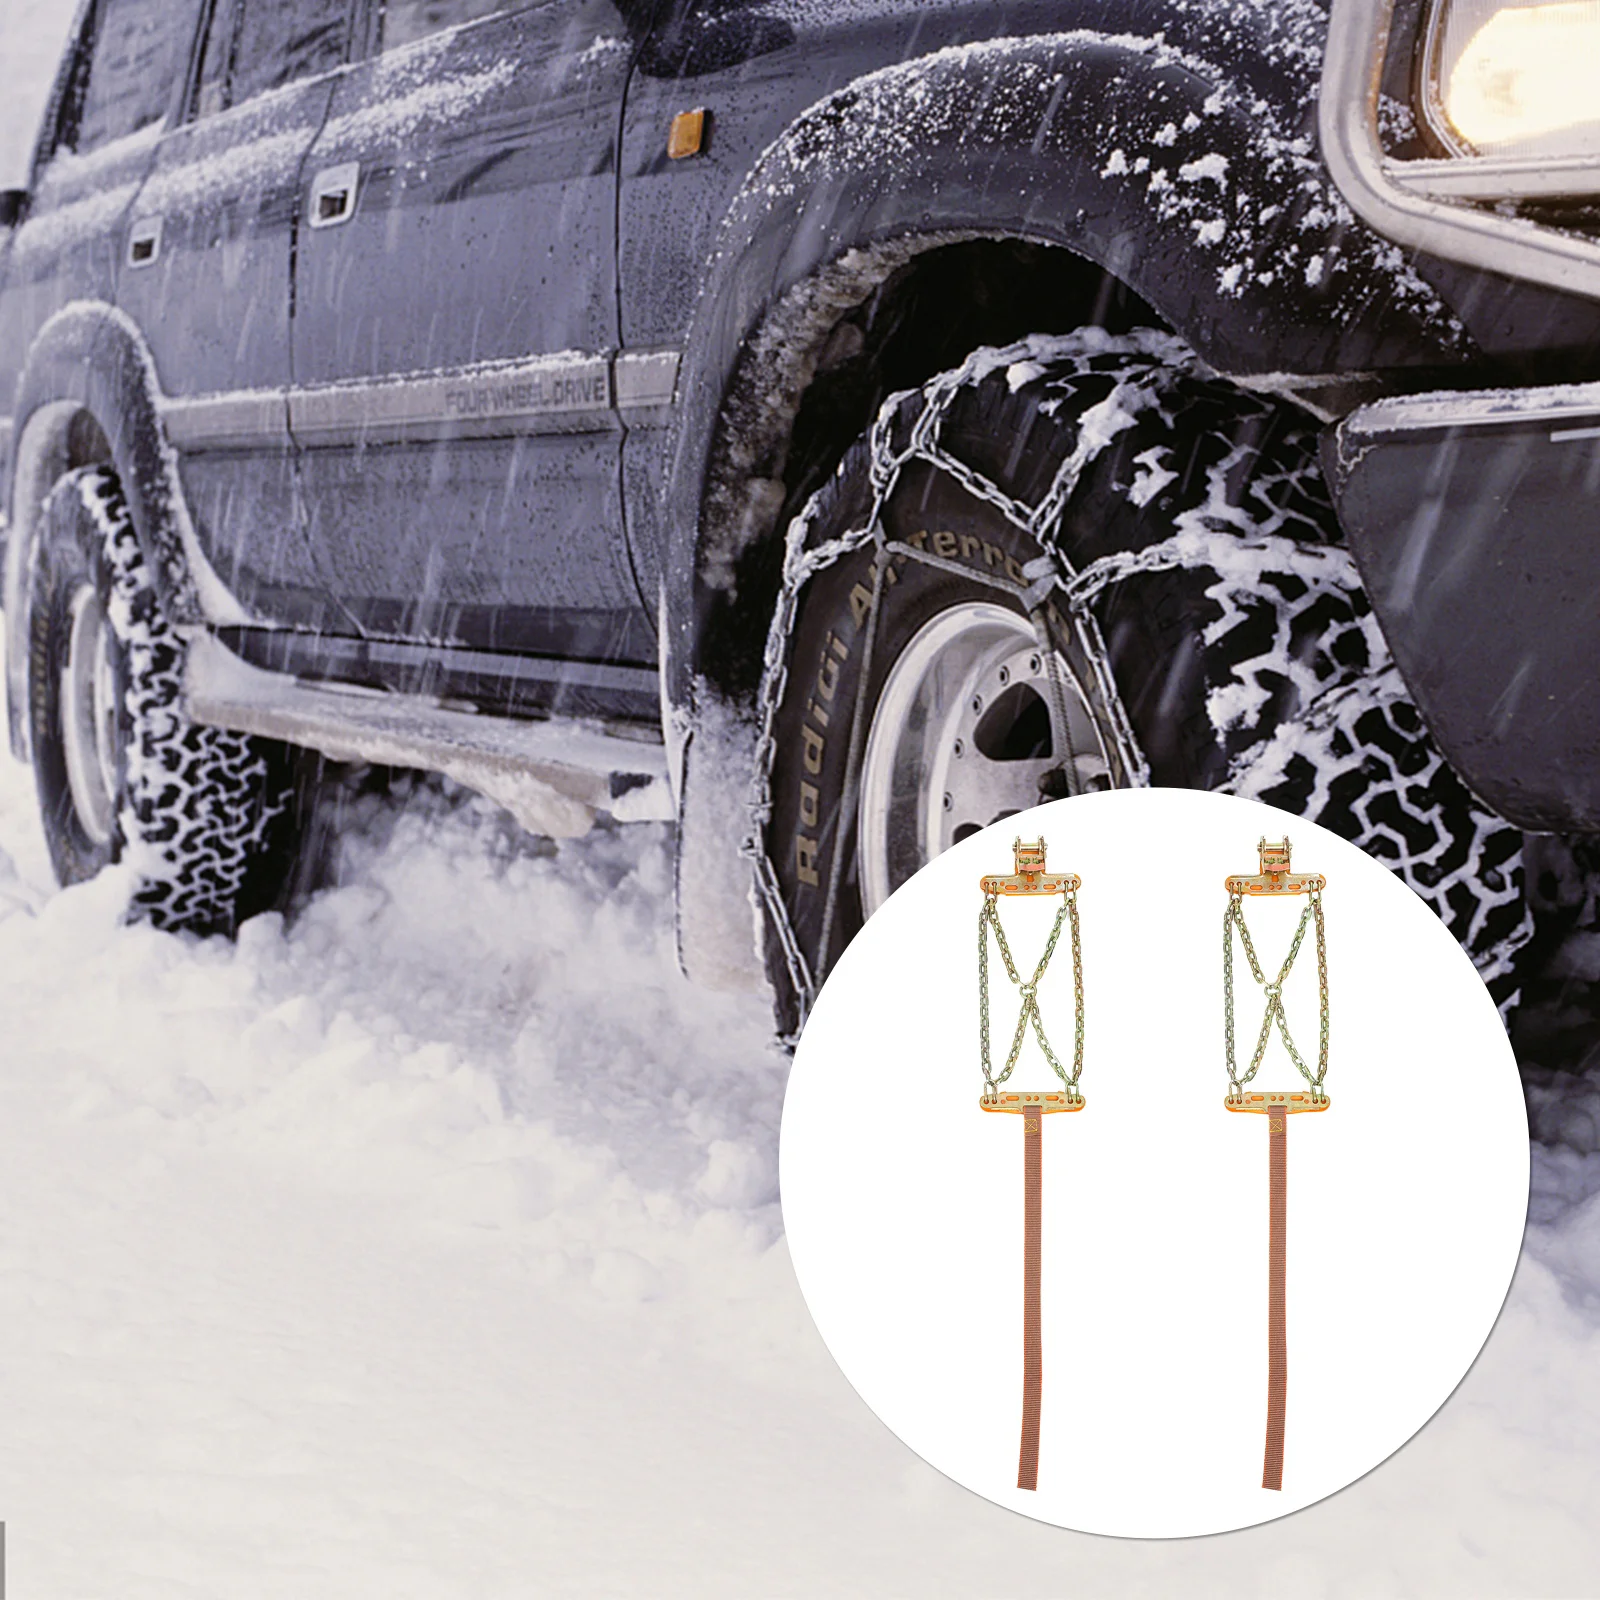 

2 шт., автомобильные цепи для снега, практичные противоскользящие цепи для шин